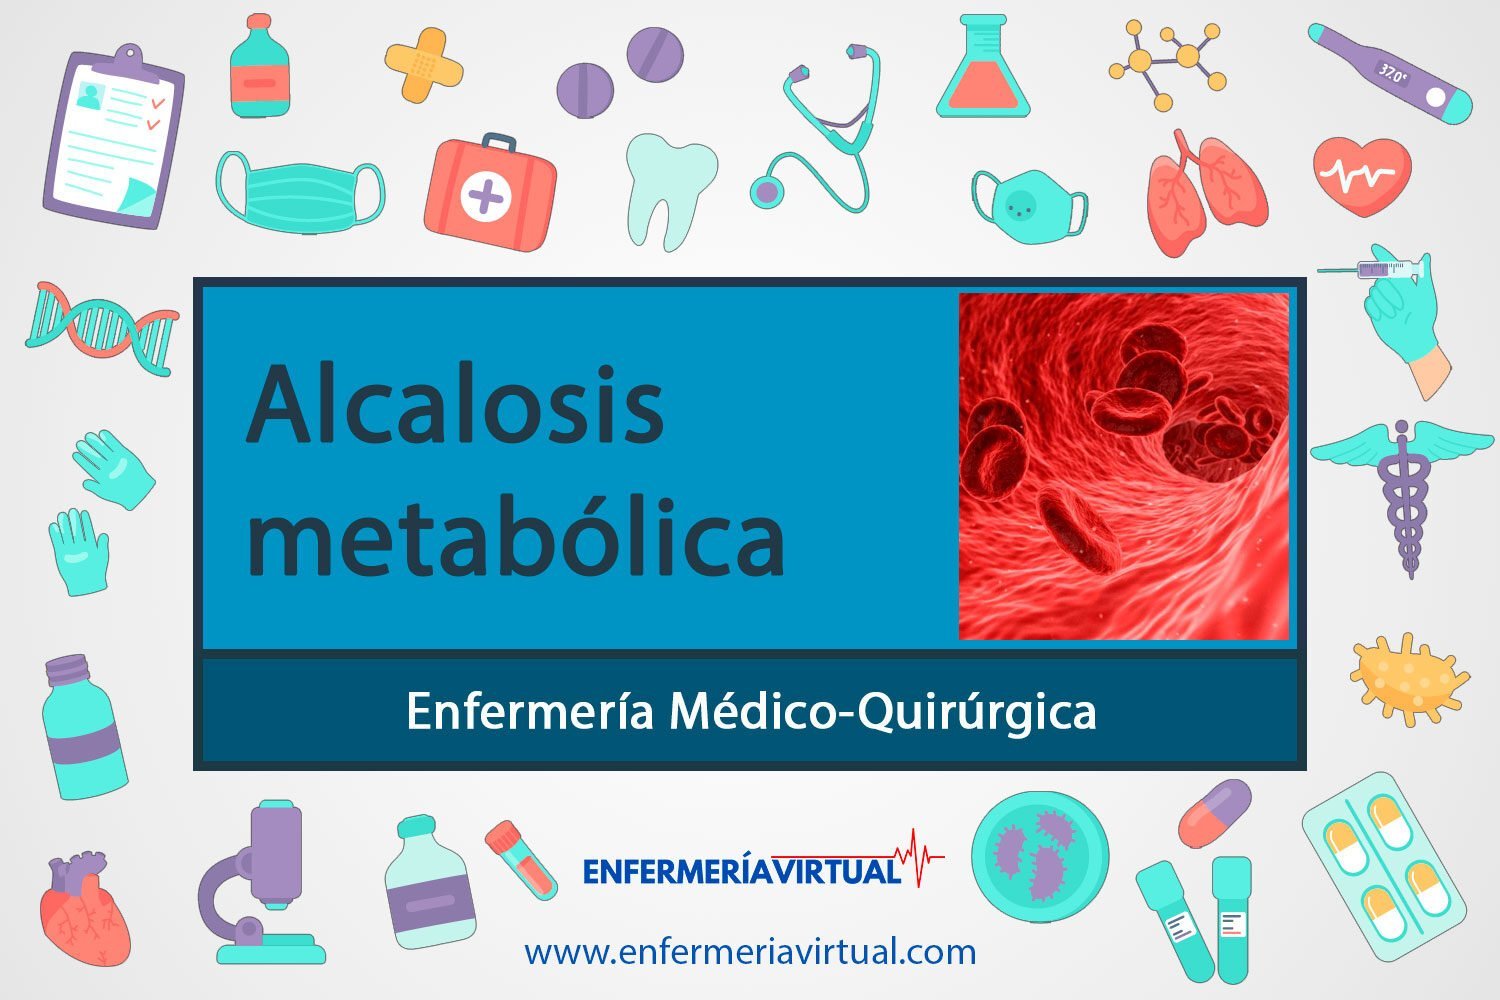 Alcalosis metabólica